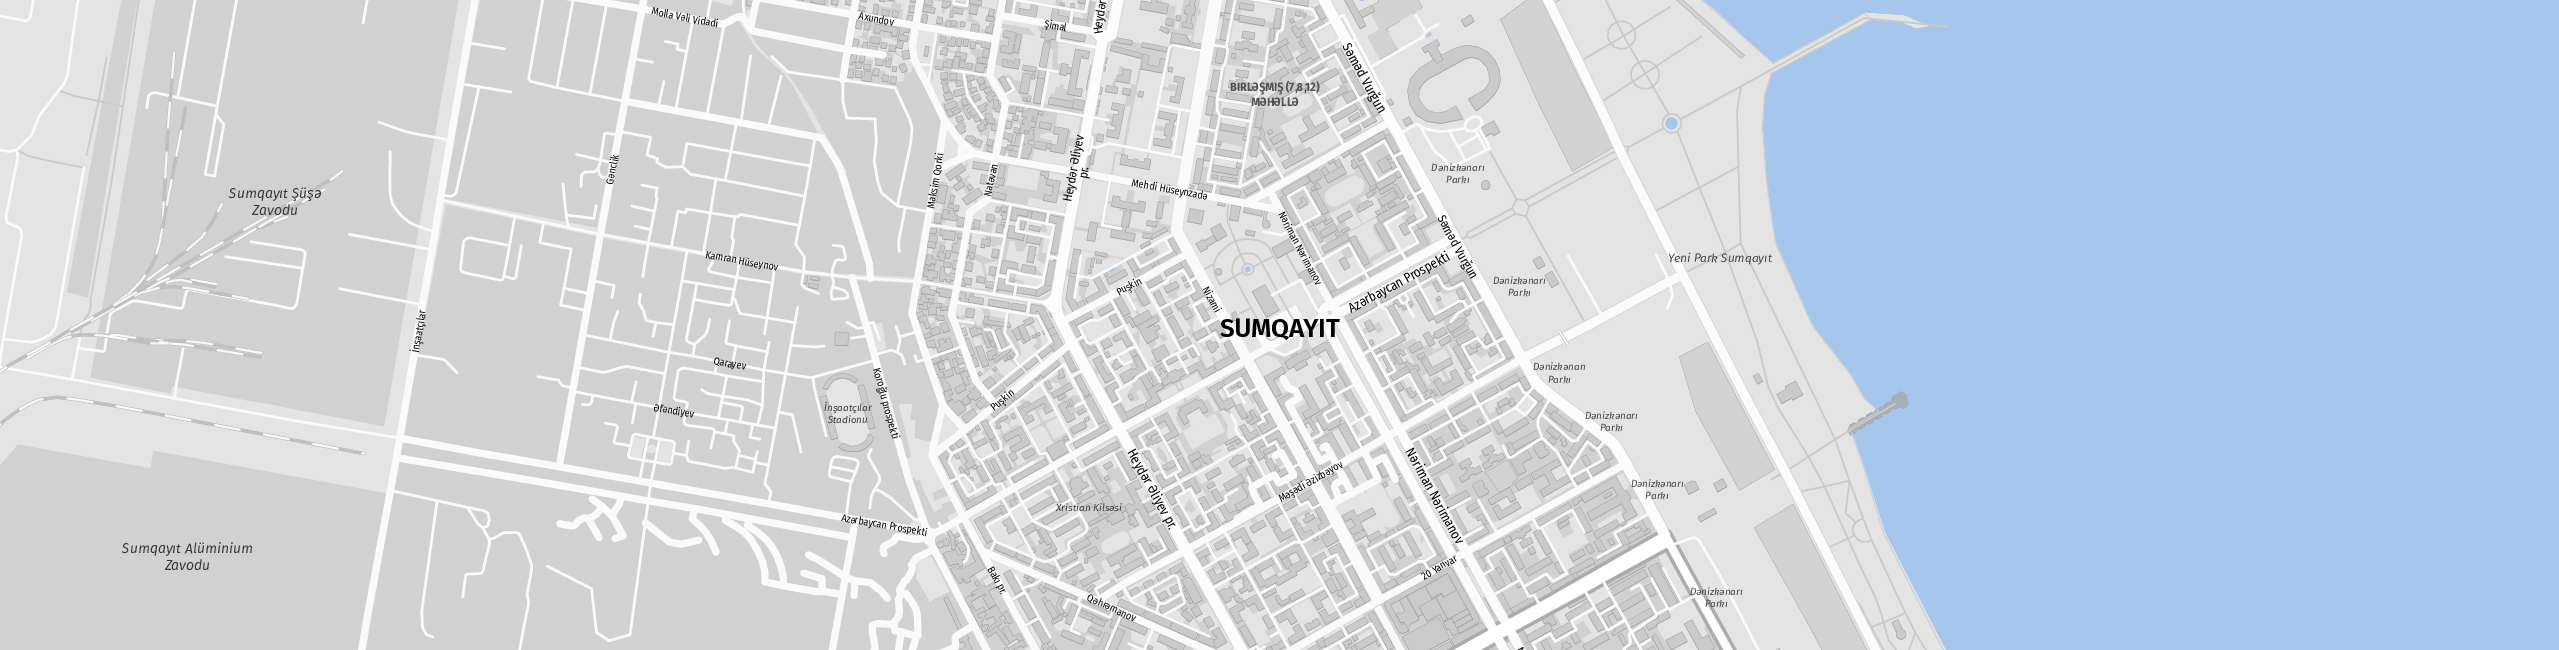 Stadtplan Sumgayit zum Downloaden.